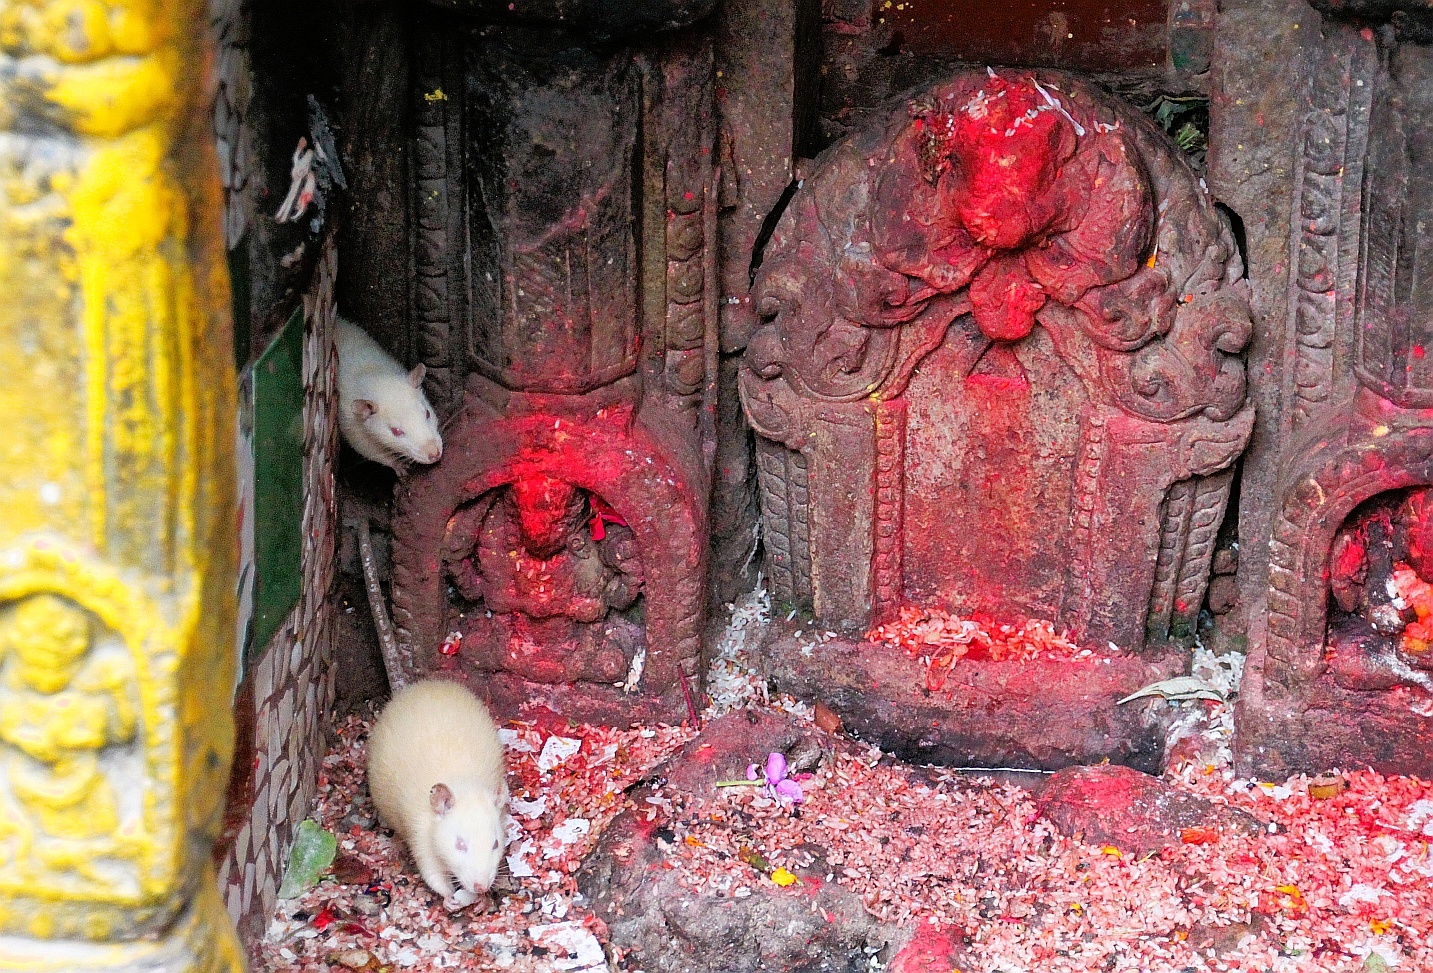 Nepal-souris-devorant-les-offrandes-dans-un-temple-bouddhique-a-Patan